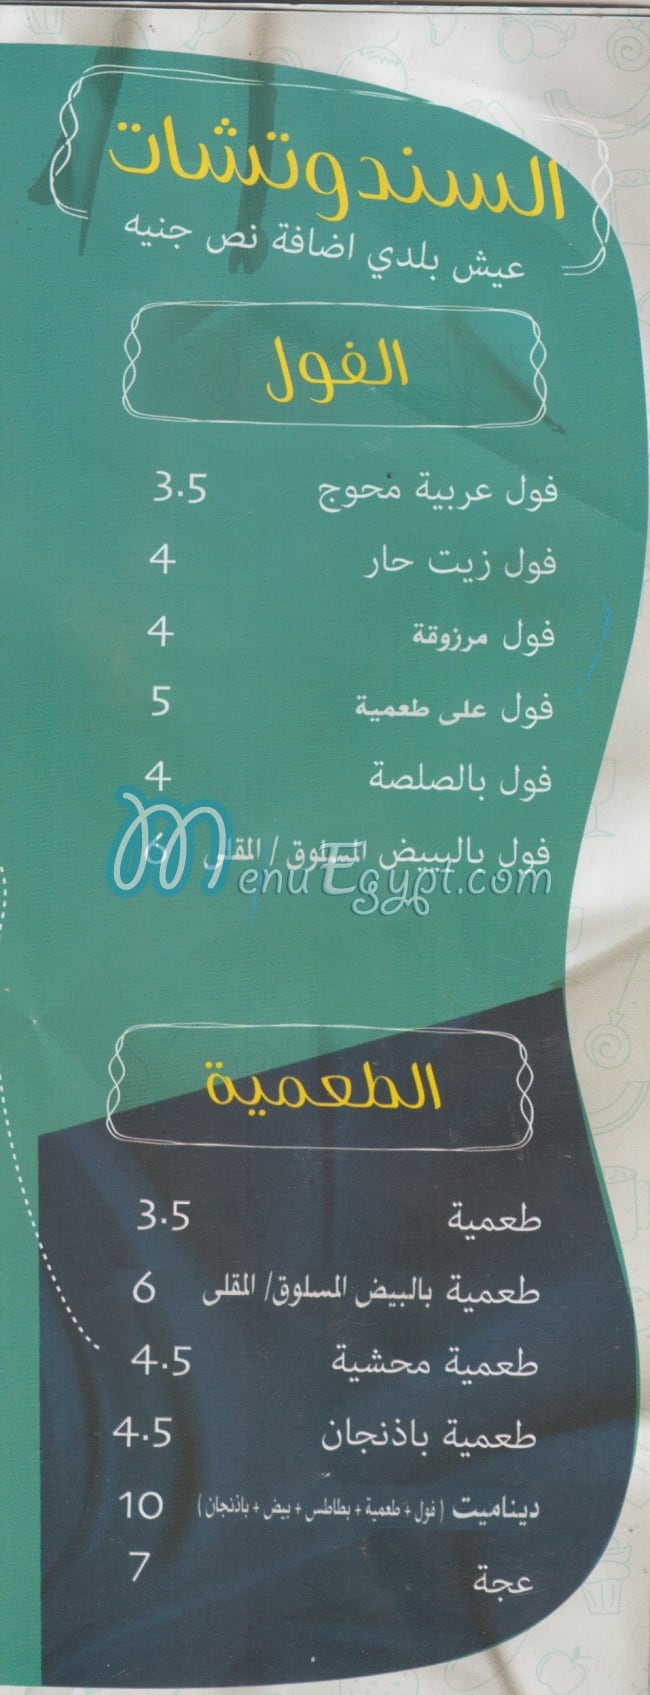 Marzouka Restaurant menu